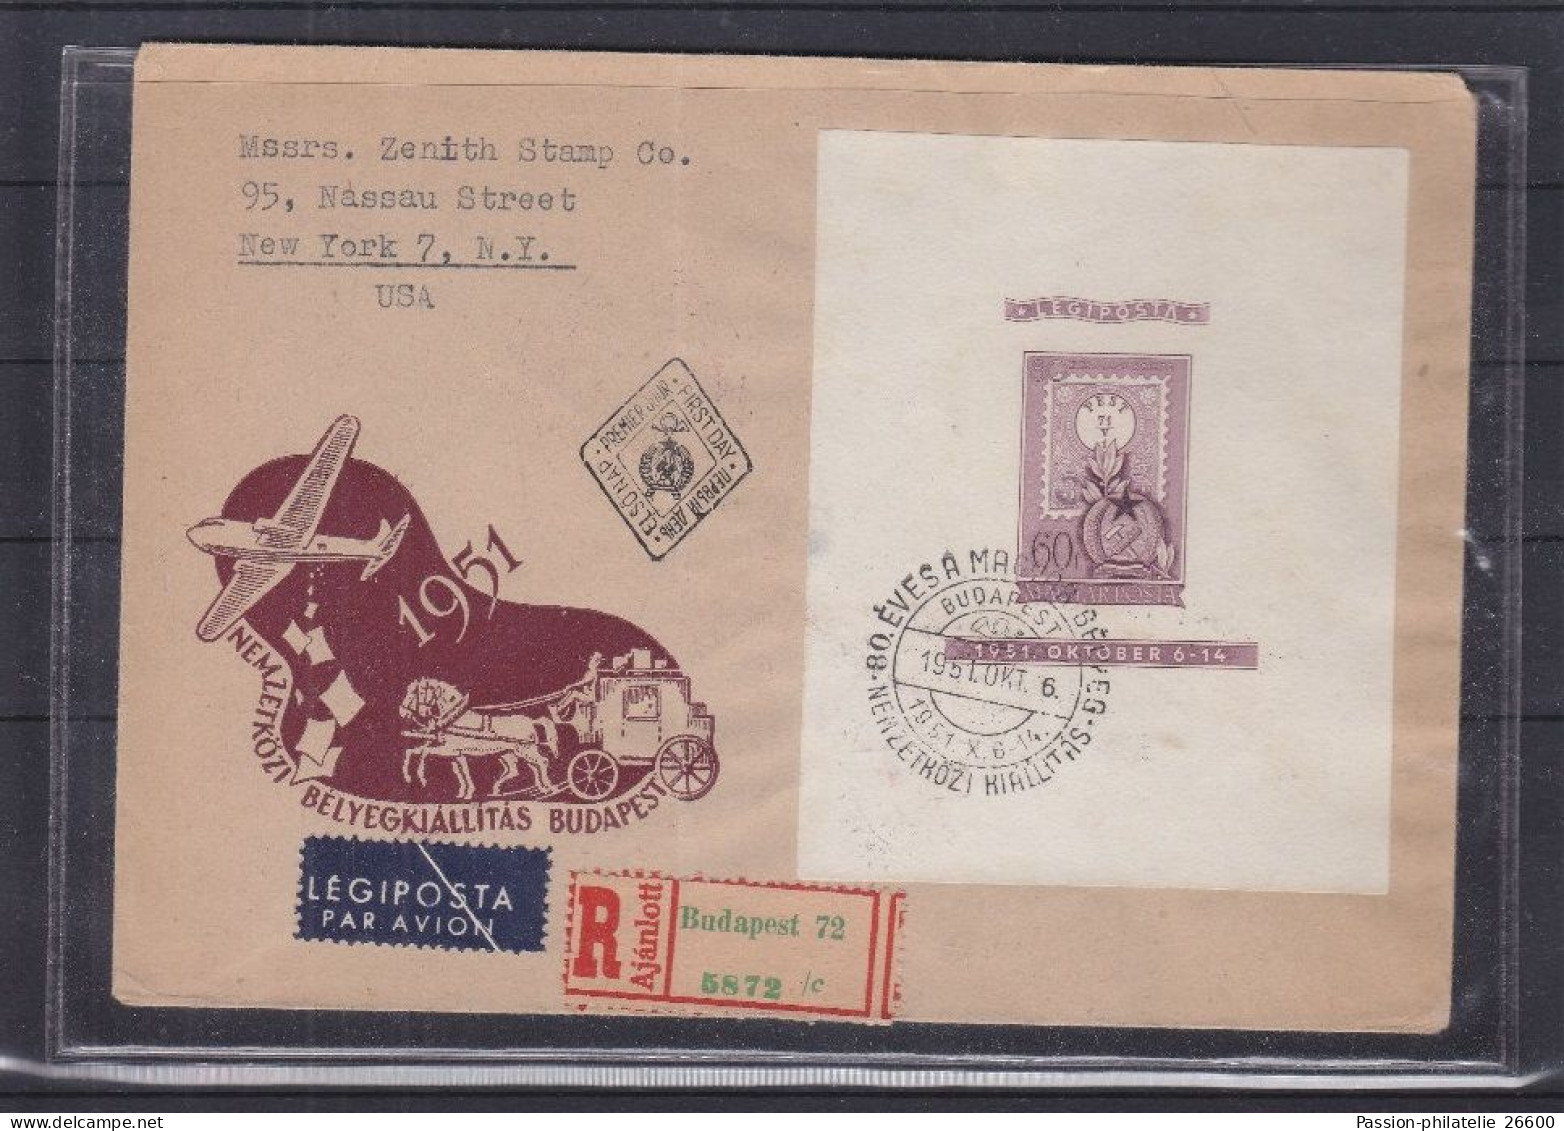 2 Lettres Timbres Sur Timbres - Hongrie - Lettres Recommandée De 1951 ° - 2 Blocs Dentelé Et NON Dentelé - Rare - Storia Postale